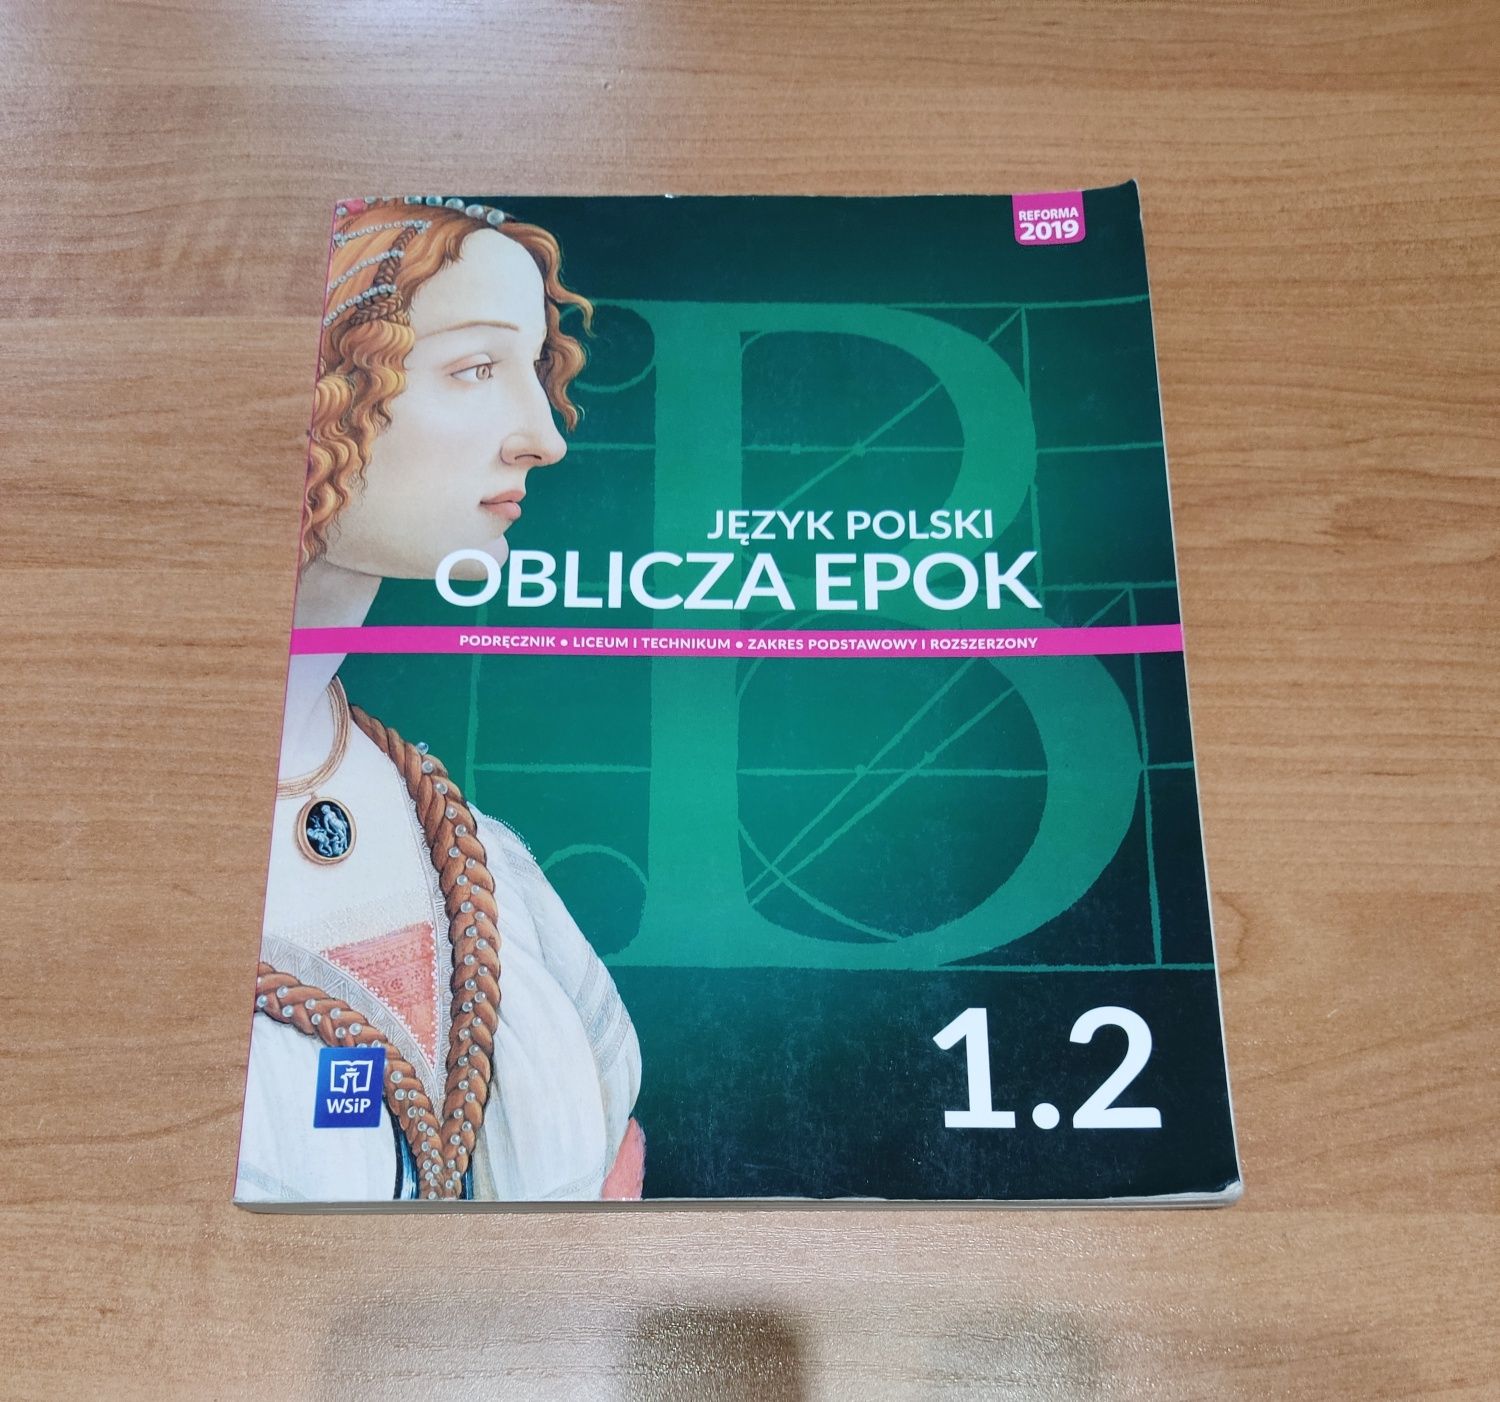 Sprzedam książkę do szkoły średniej Język Polski Oblicza Epok 1.2